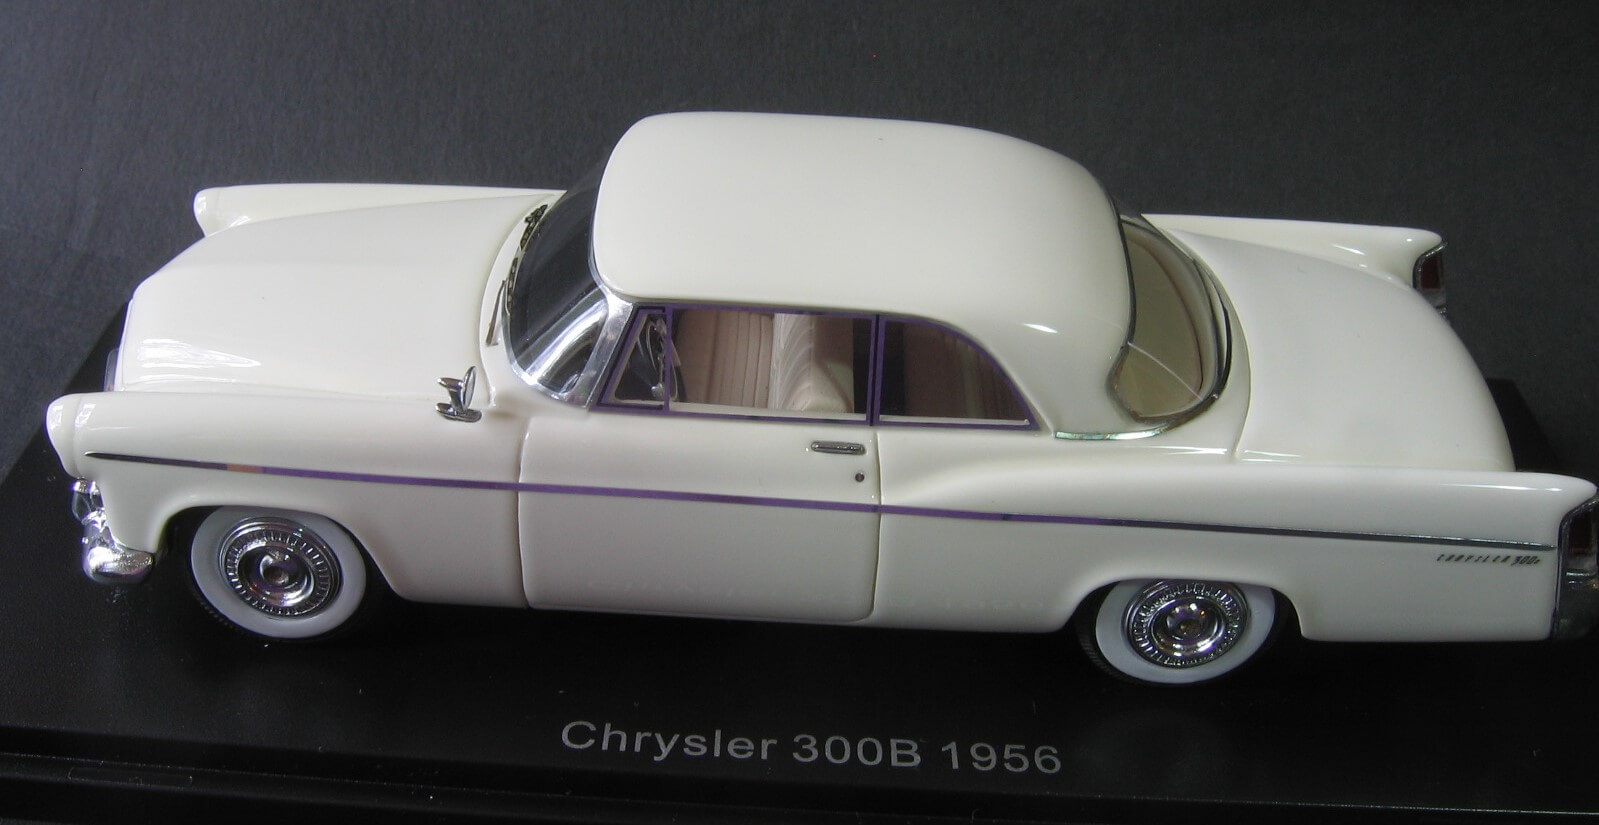 Chrysler 300B 1956